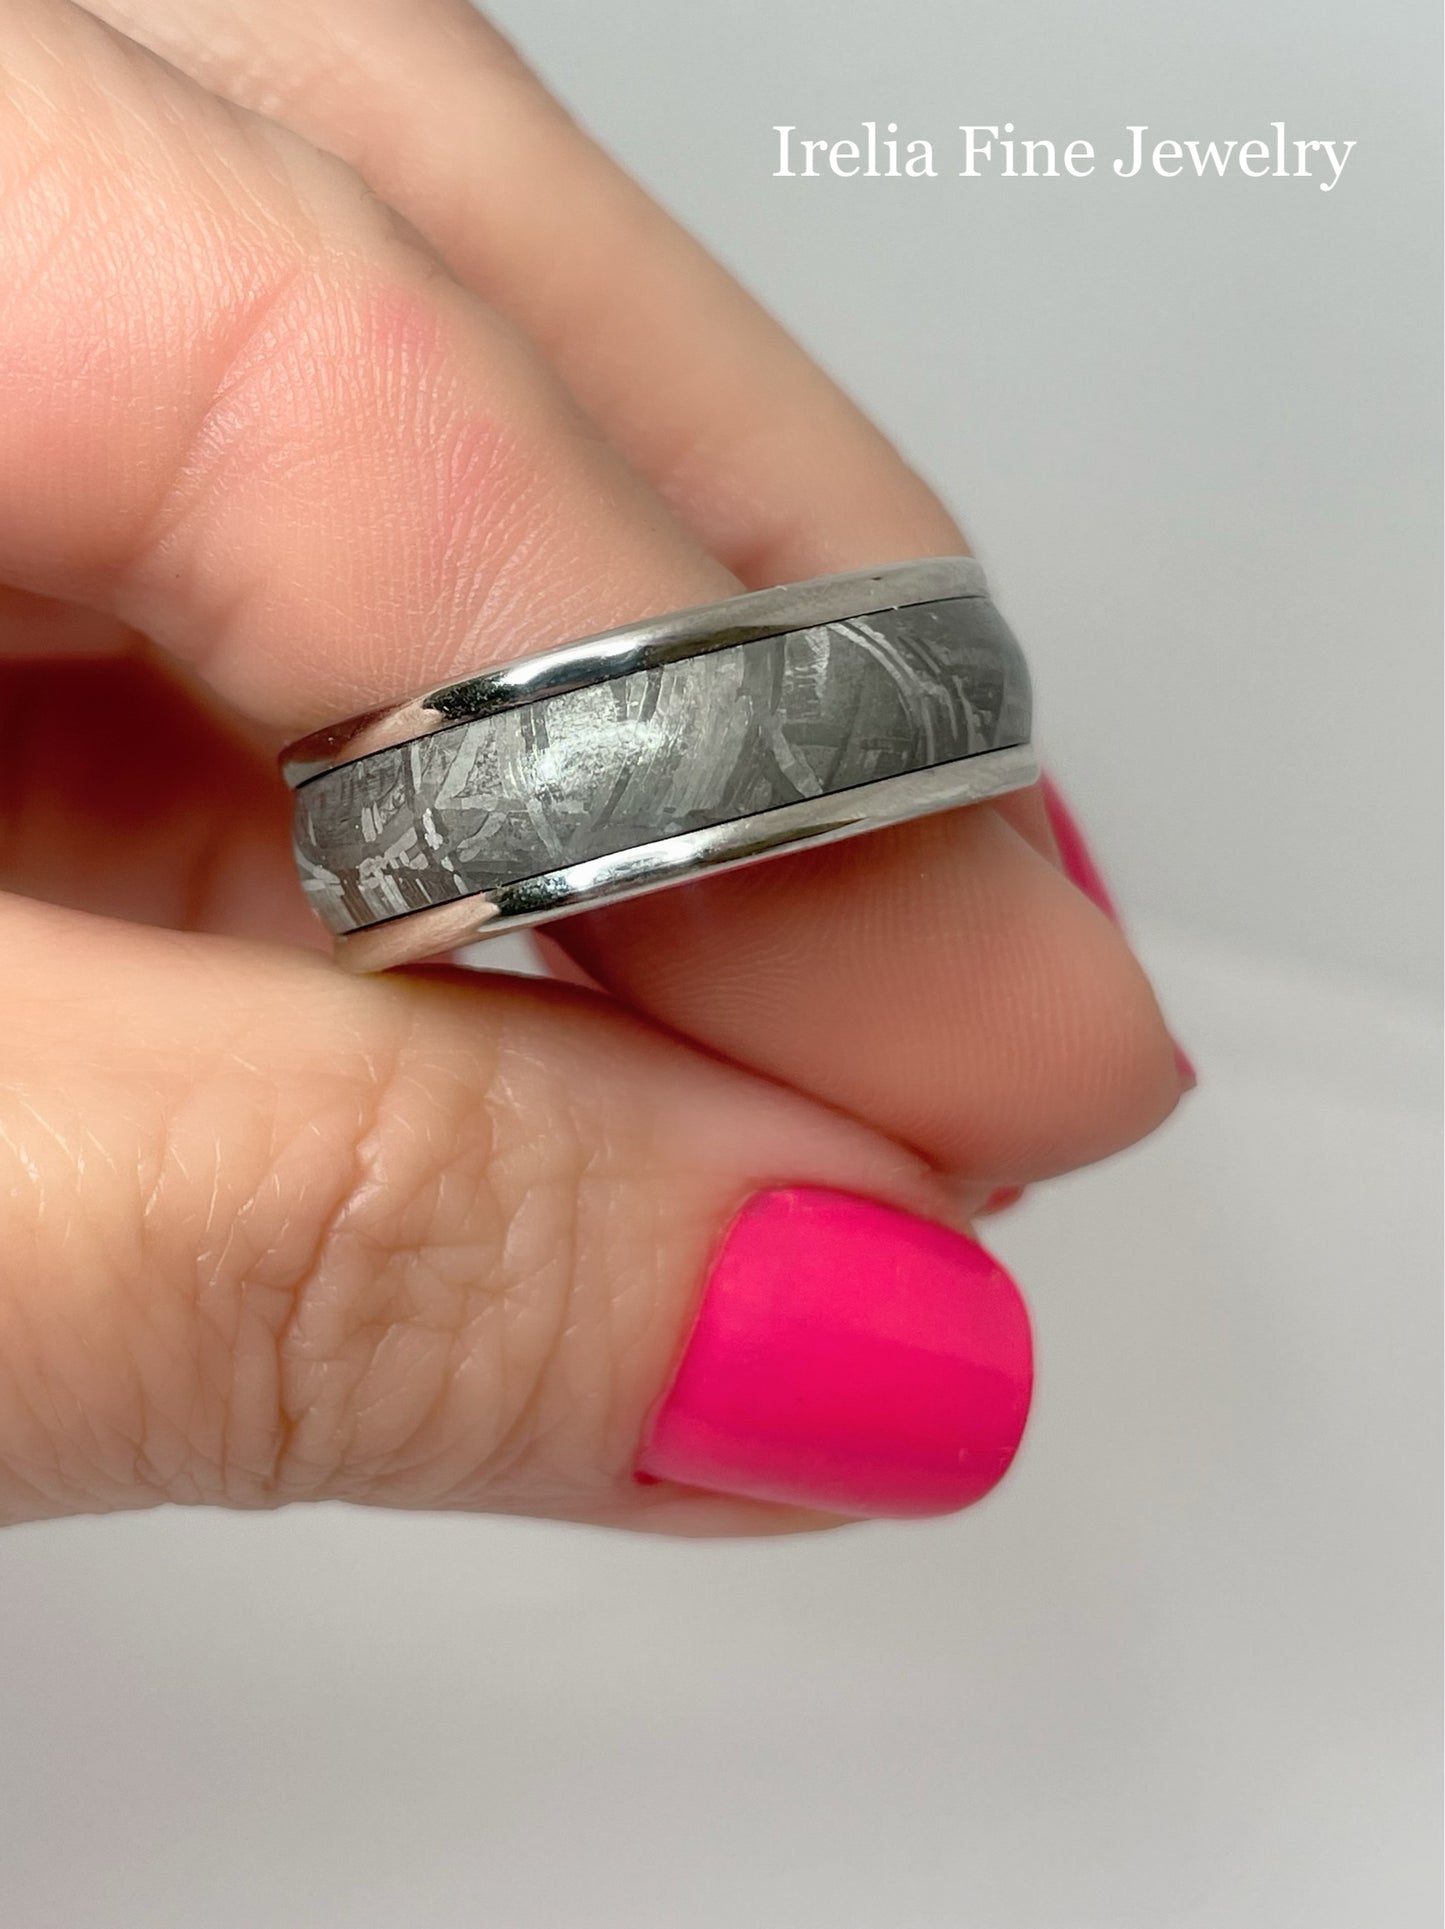 8mm Grey Tungsten Carbide Ring - Meteorite Insert with Round Edge Size 10